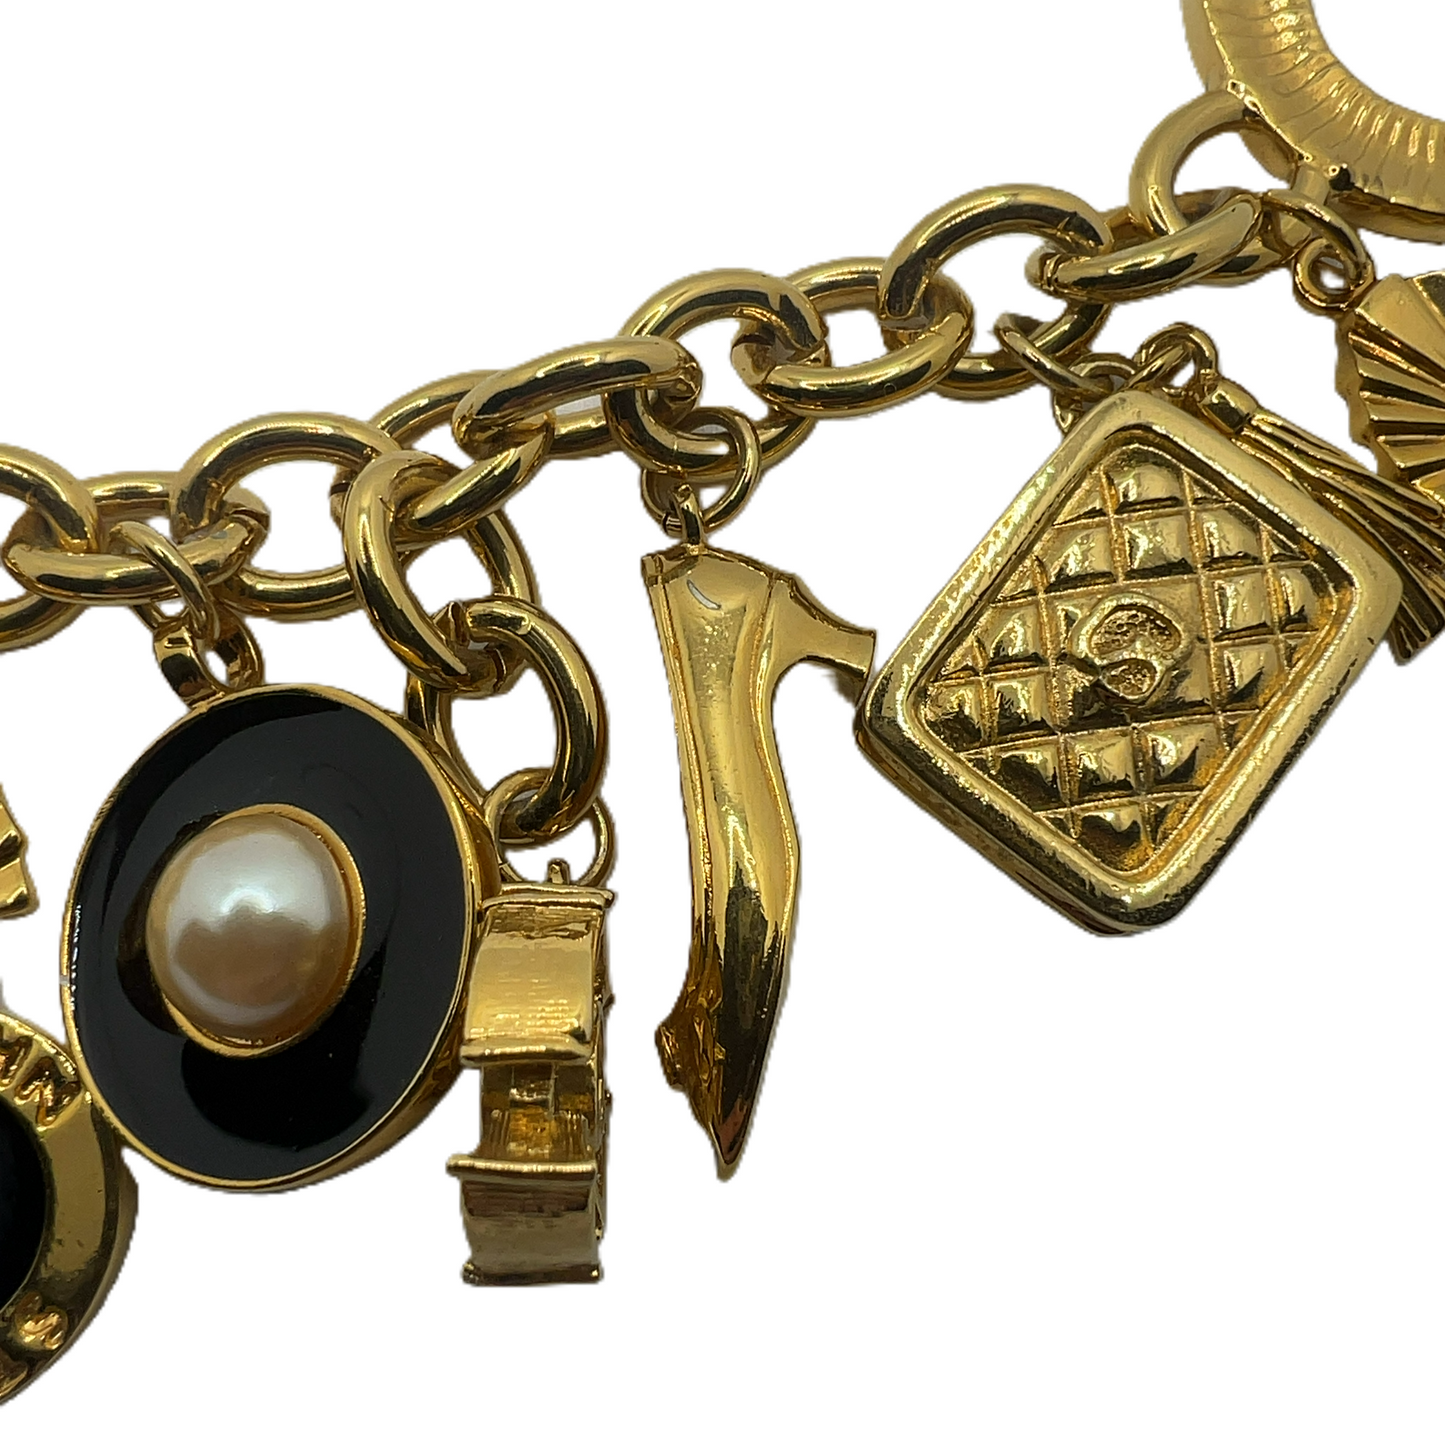 Bracelet Designer By St John Collection